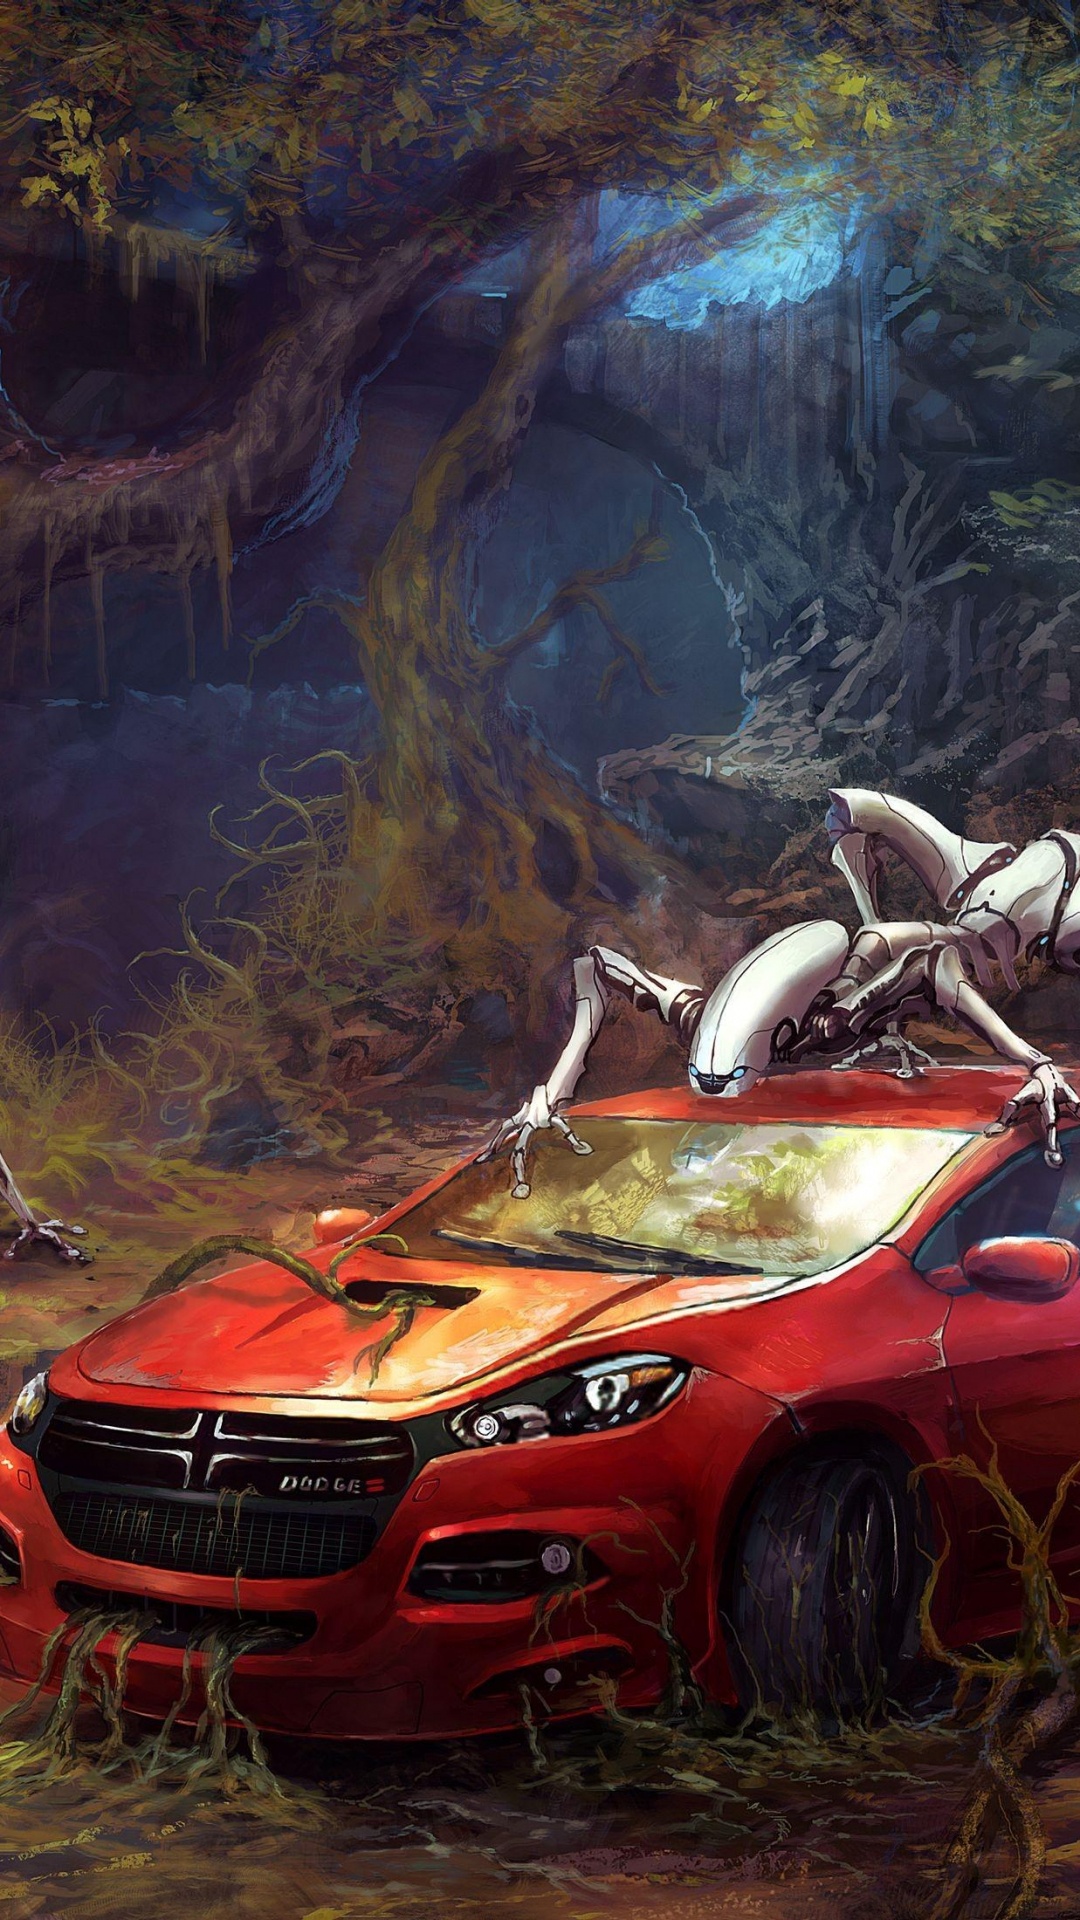 Roter Und Schwarzer Chevrolet-Camaro. Wallpaper in 1080x1920 Resolution